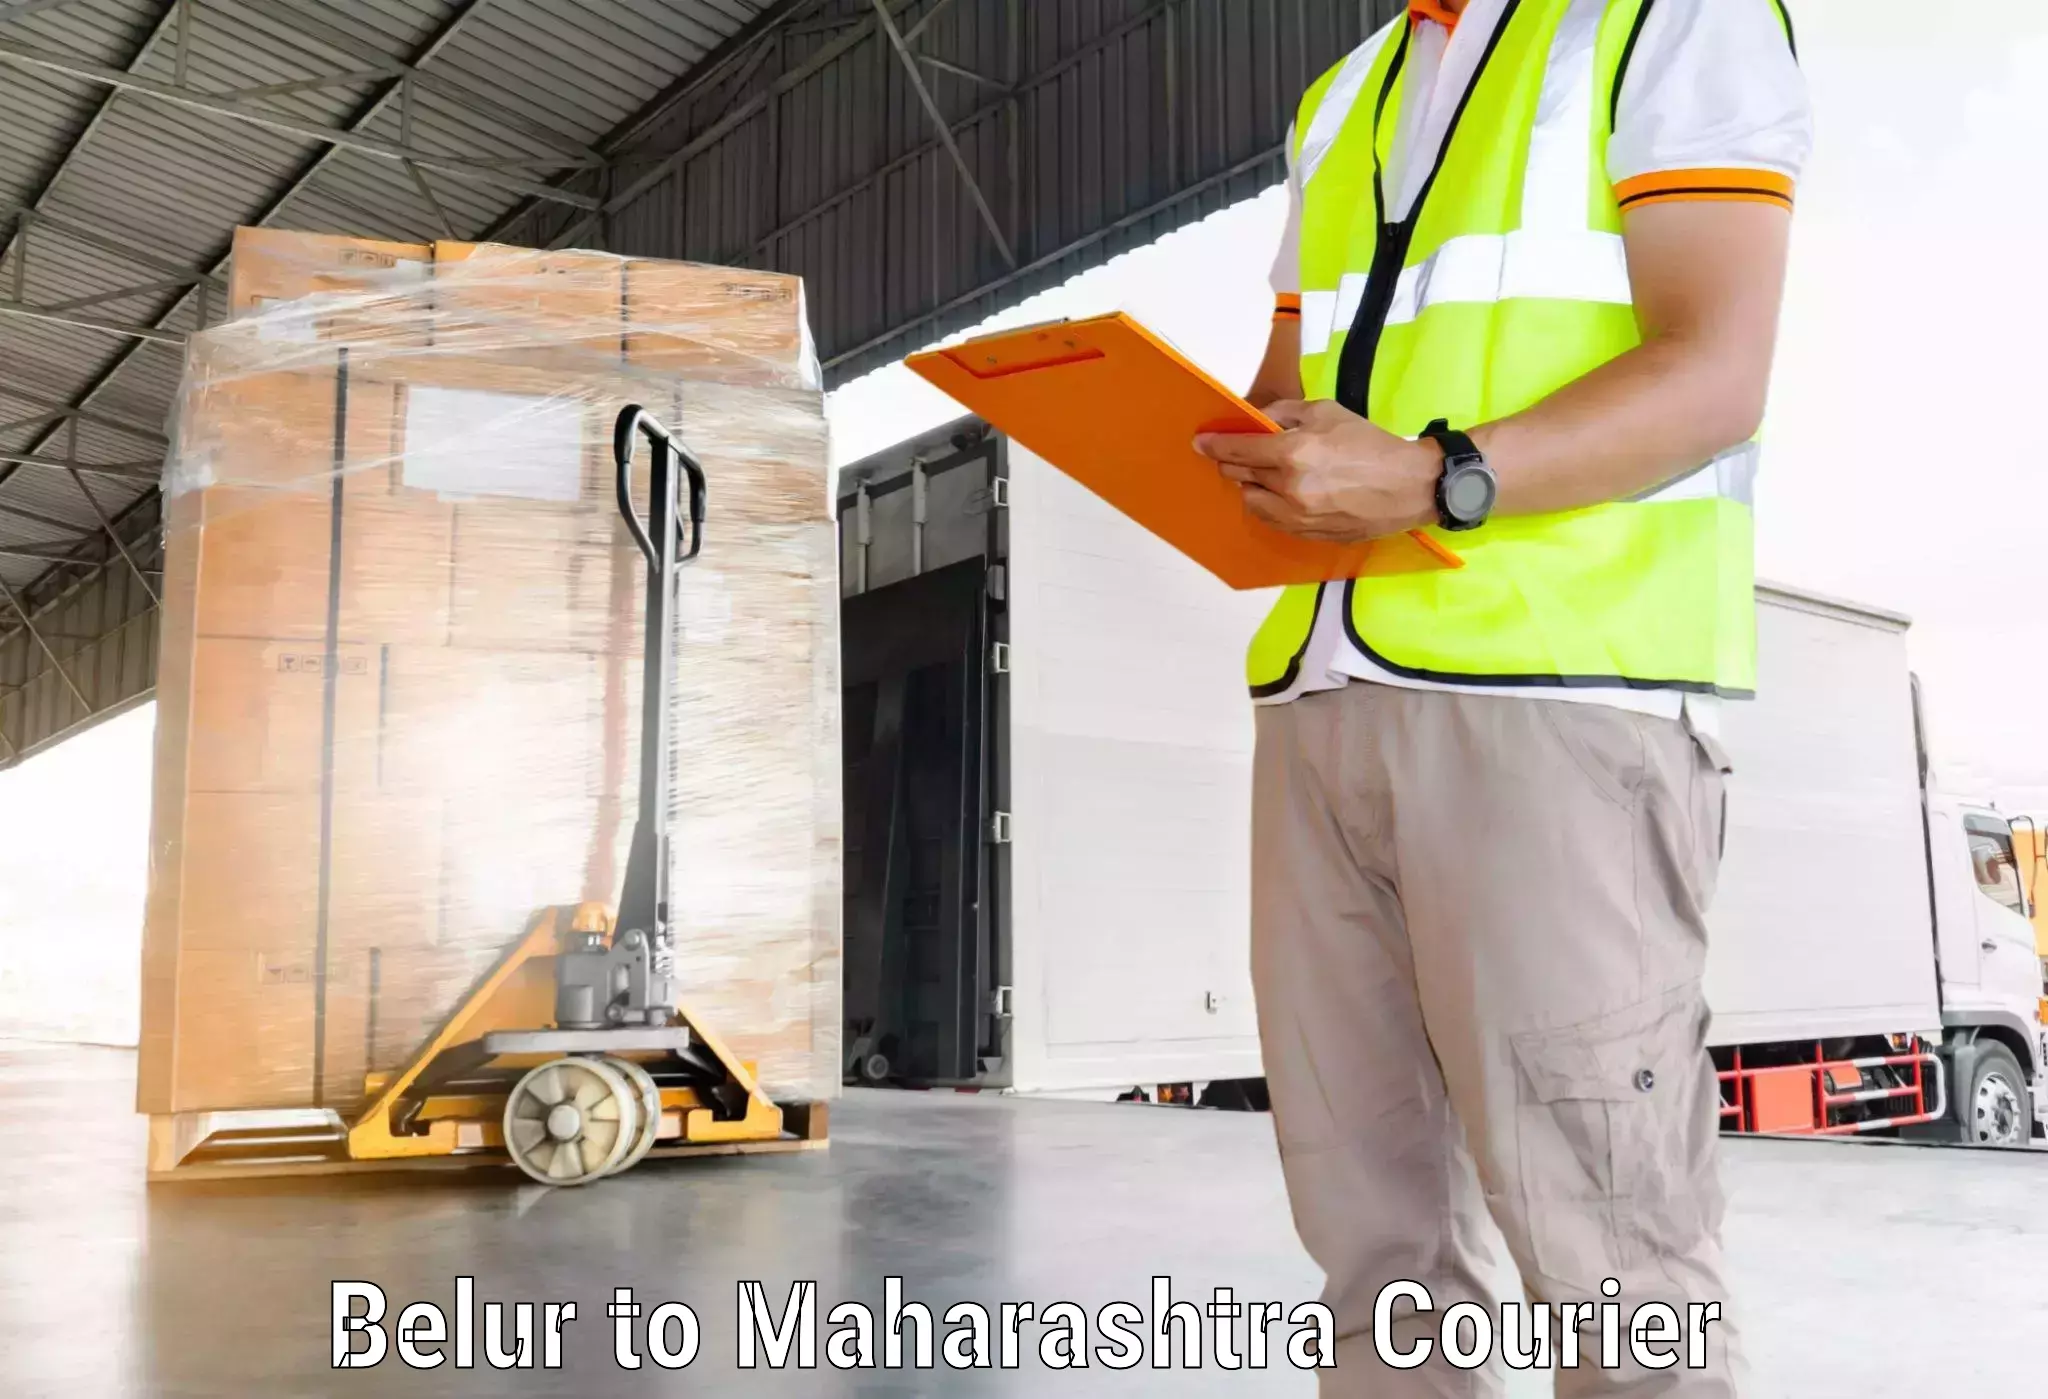 24/7 courier service Belur to Walchandnagar